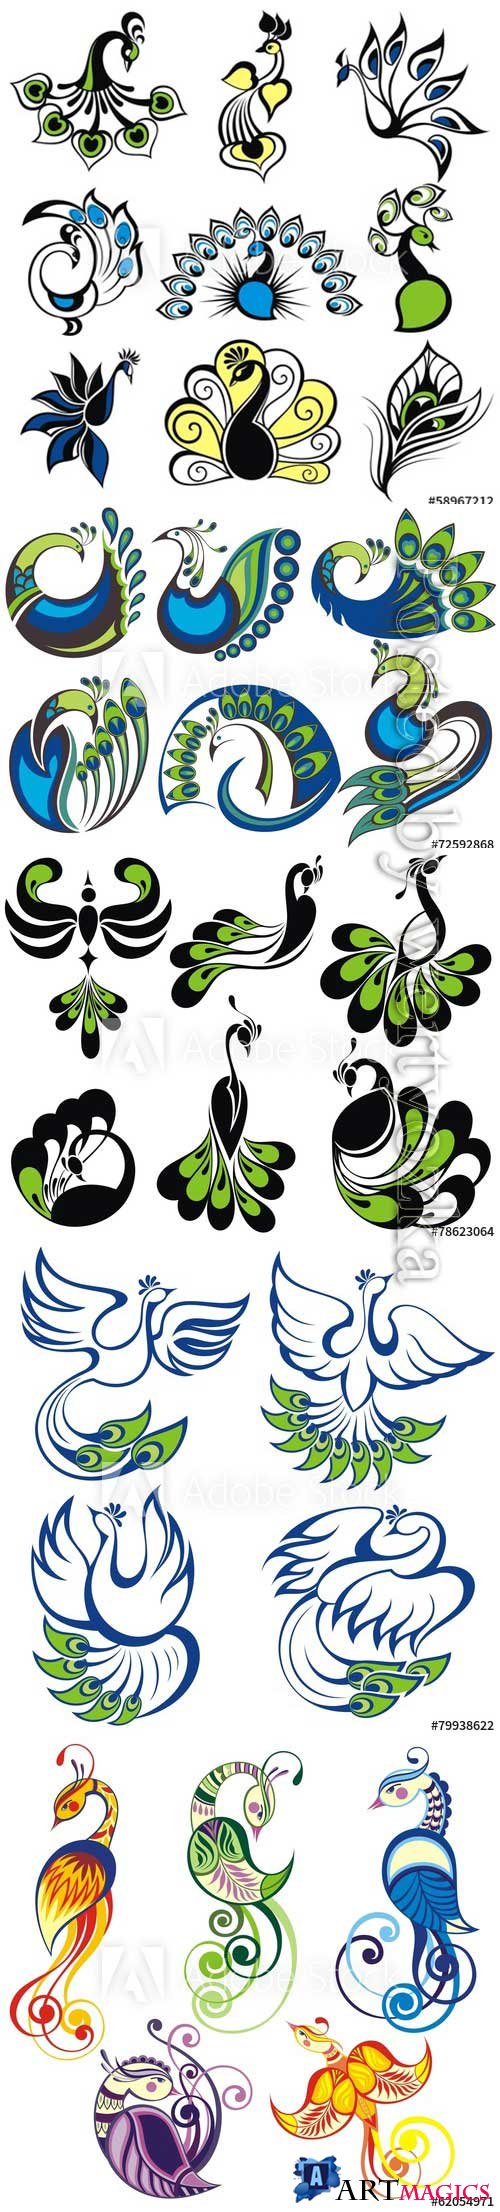 Birds icons, peacock vector birds